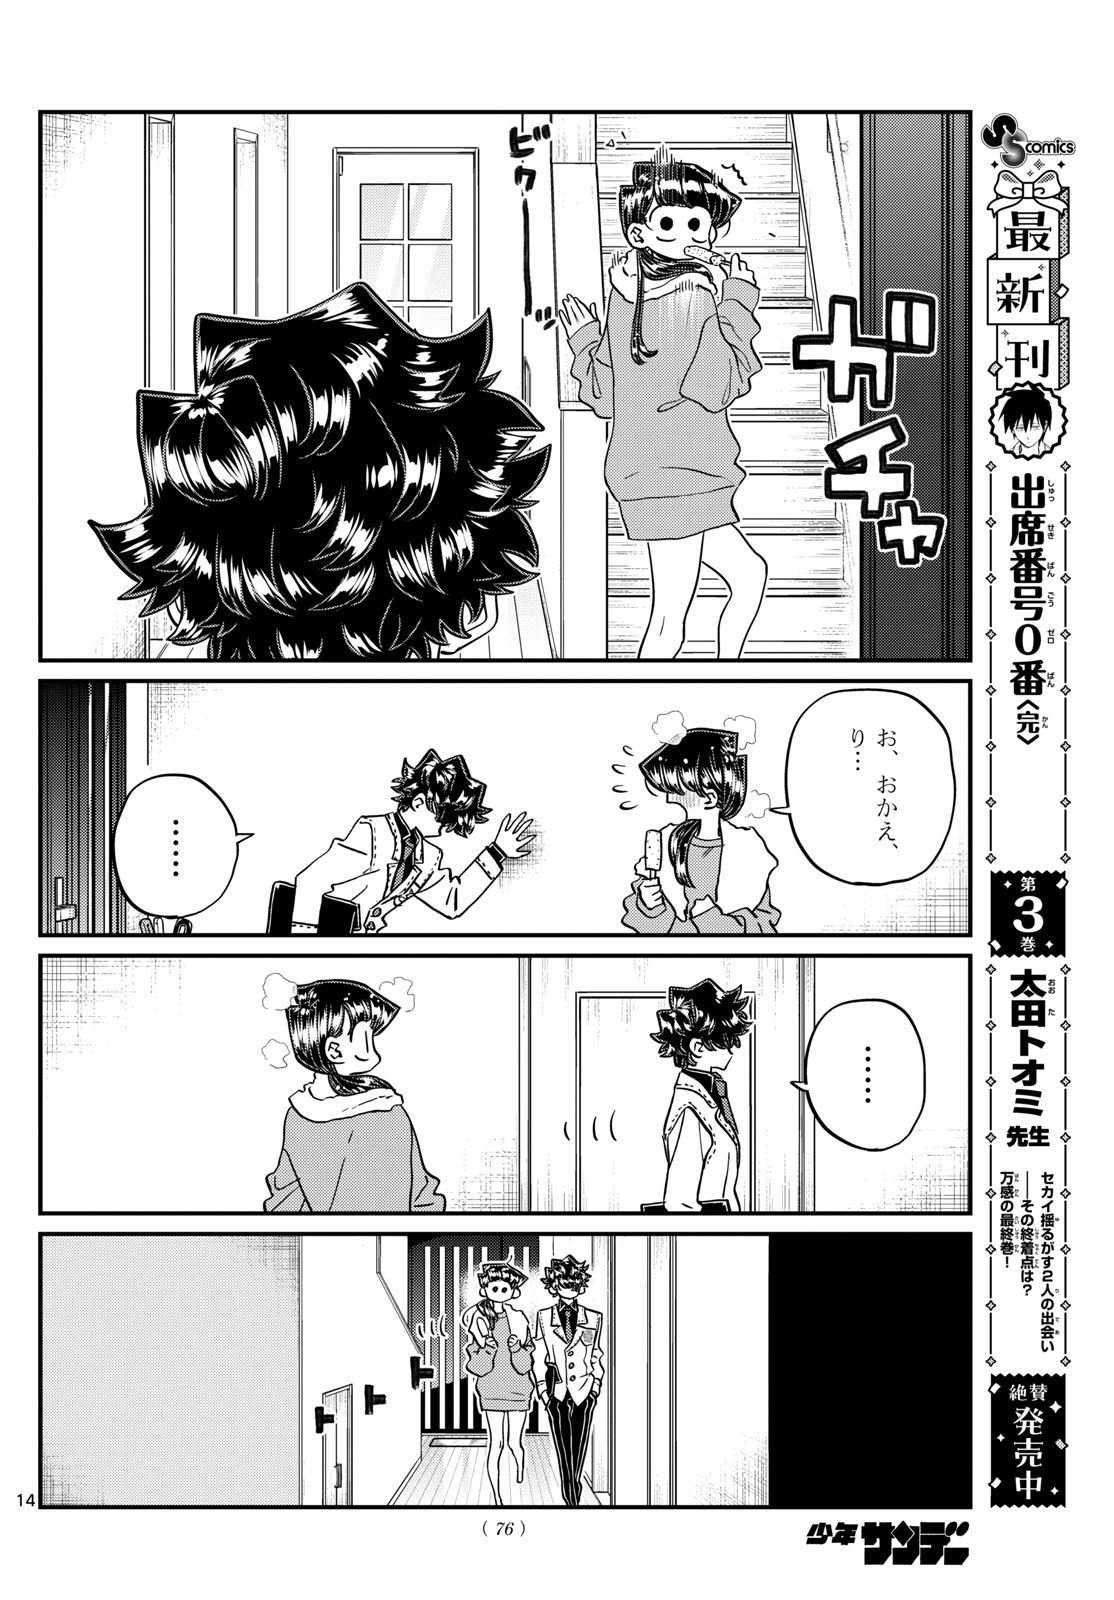 Komi-san wa Komyushou Desu - Chapter 462 - Page 14